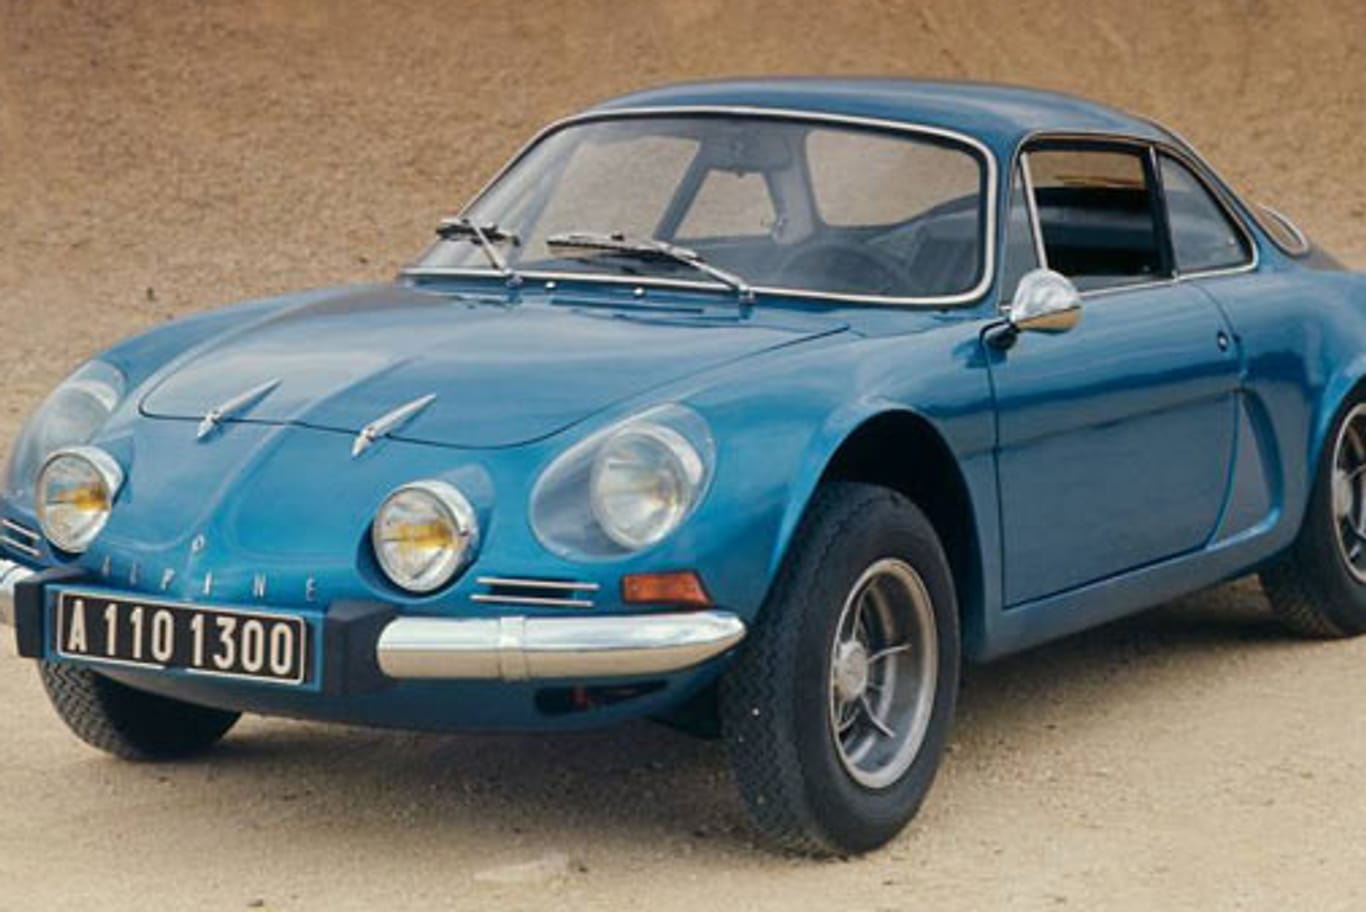 Das Original: 1963 kam der berühmte Alpine A110 erstmals auf den Markt. Er ist der Sportwagen Frankreichs schlechthin.